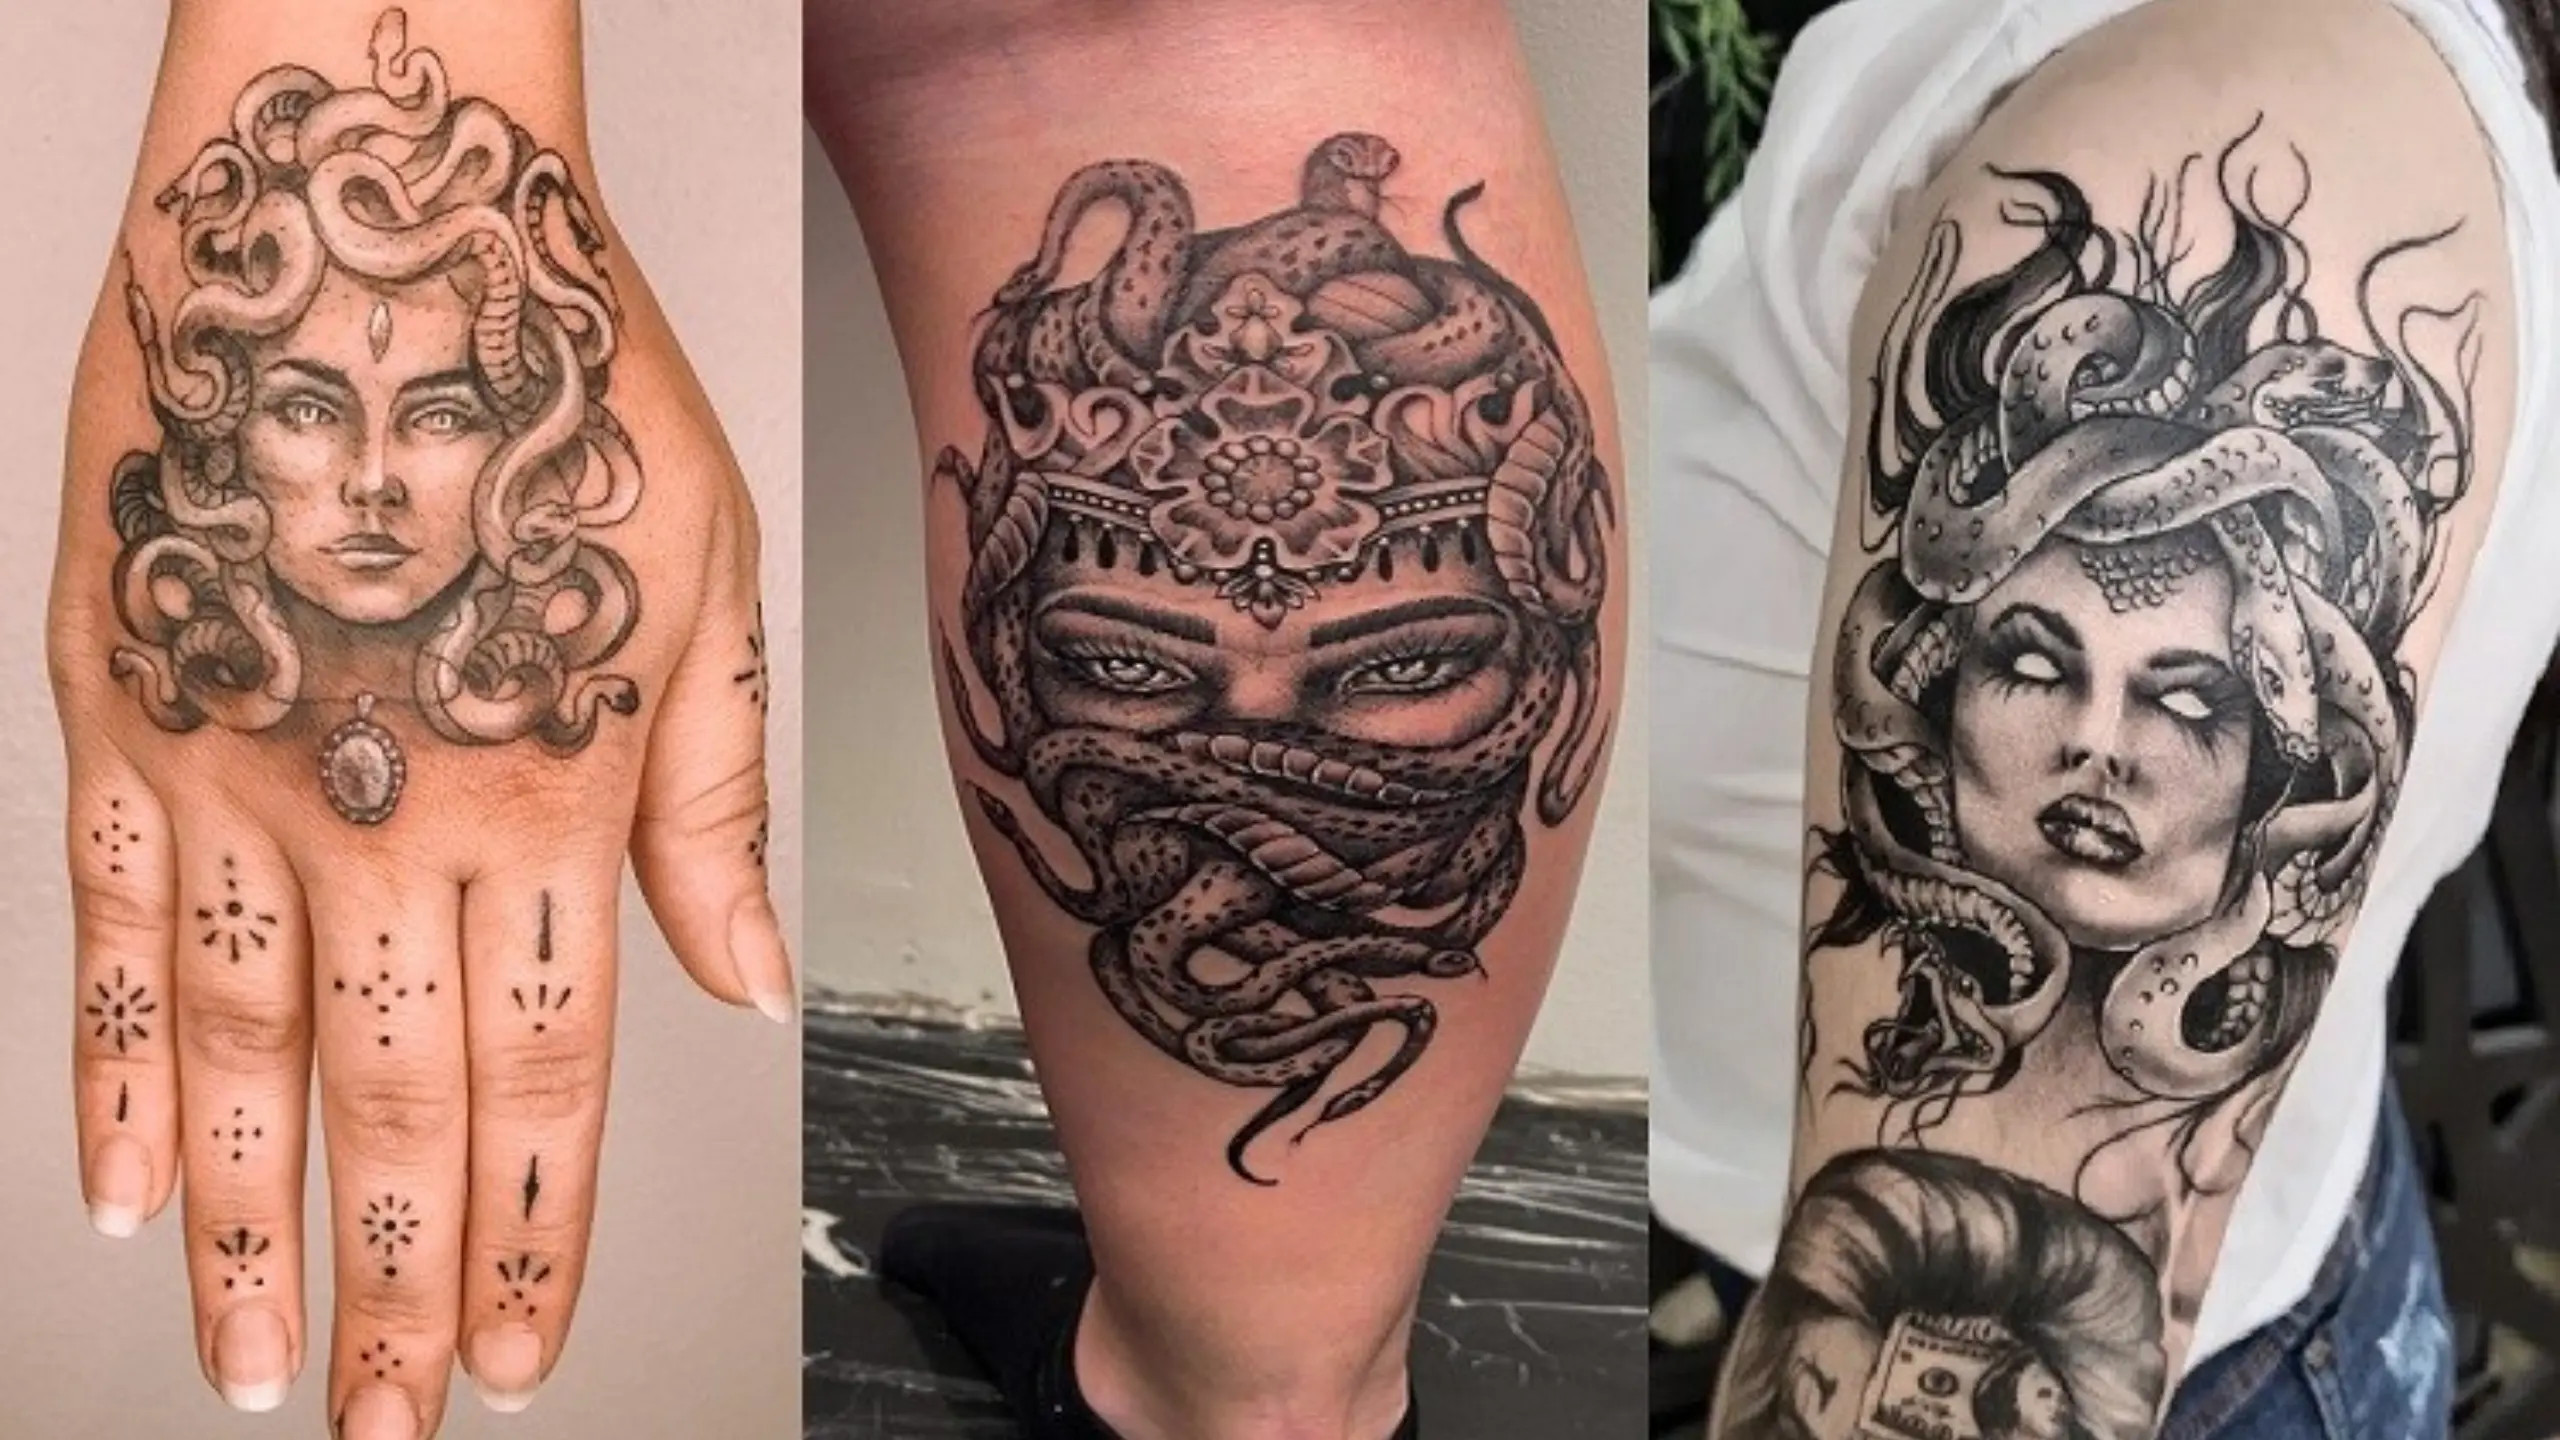 What Medusa Tattoos Mean